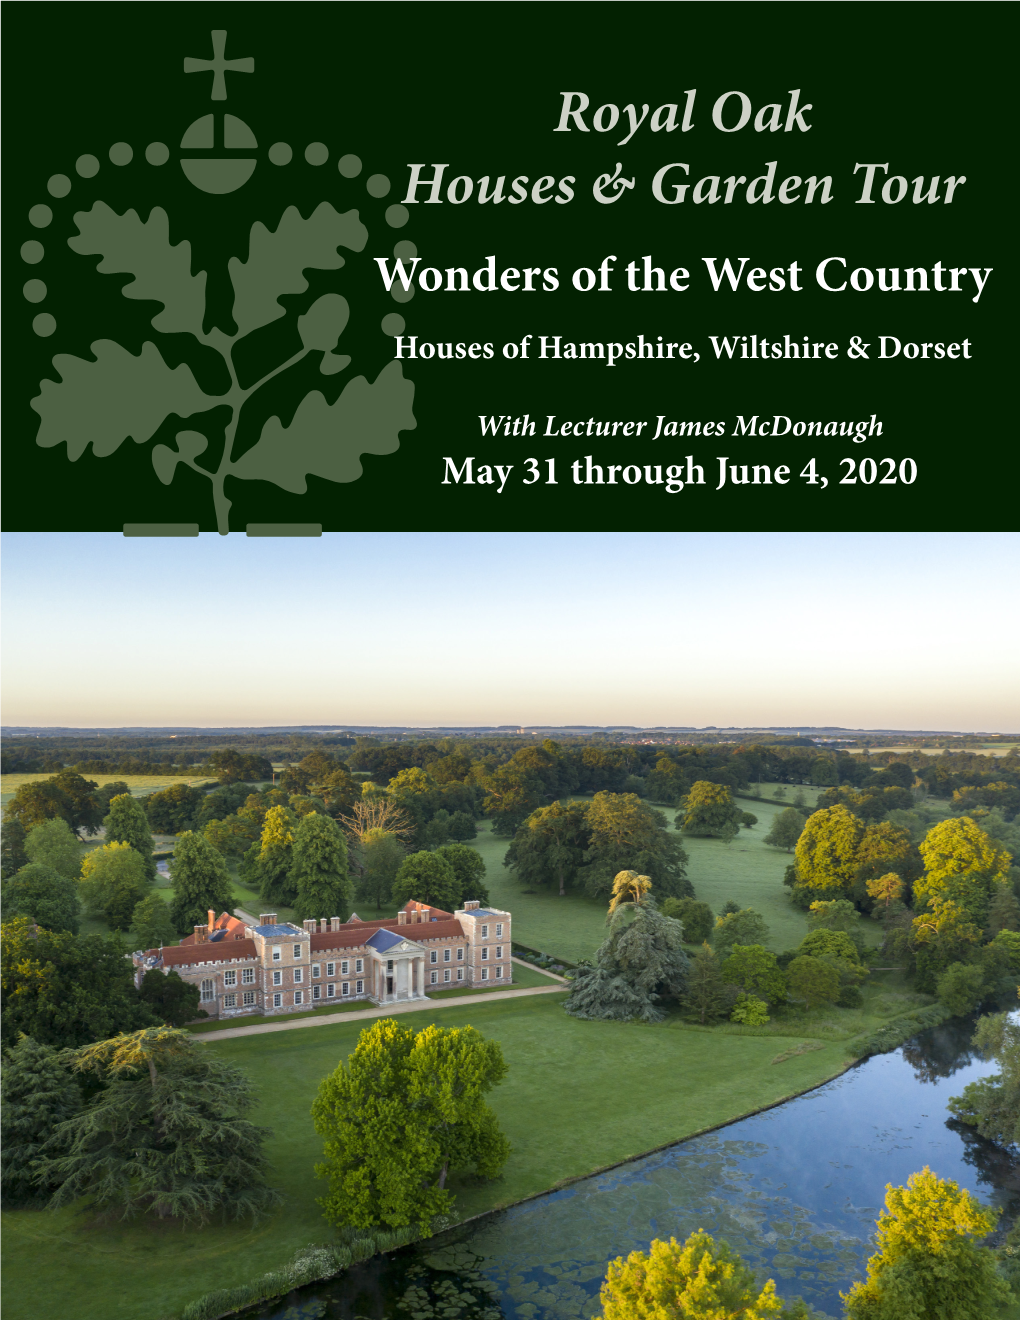 Royal Oak Houses & Garden Tour